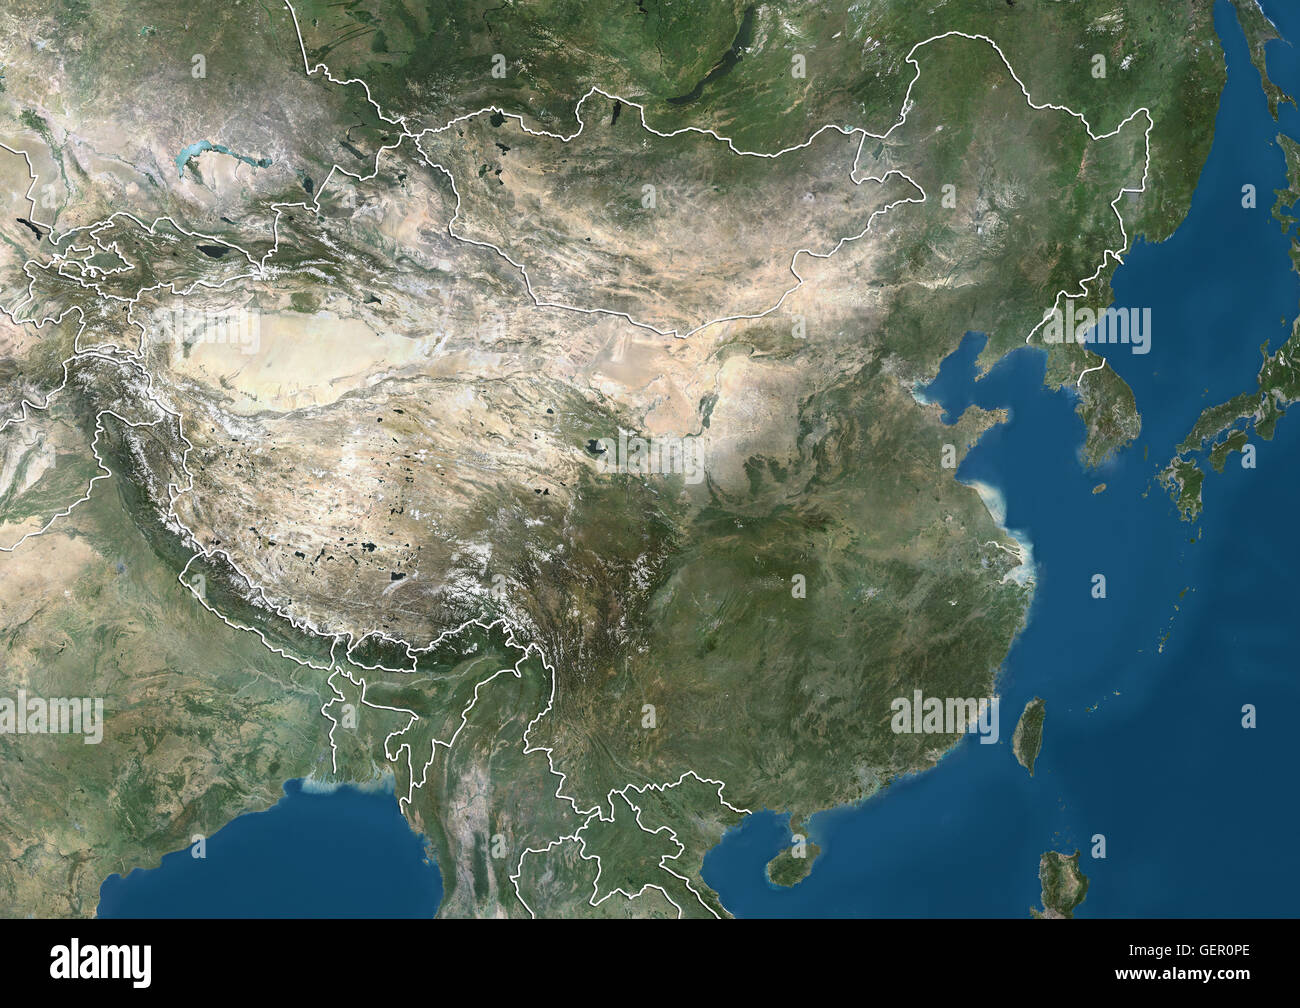 Vista satélite de China y Asia oriental (con los límites del país). Esta imagen fue compilado a partir de datos adquiridos por los satélites Landsat. Foto de stock